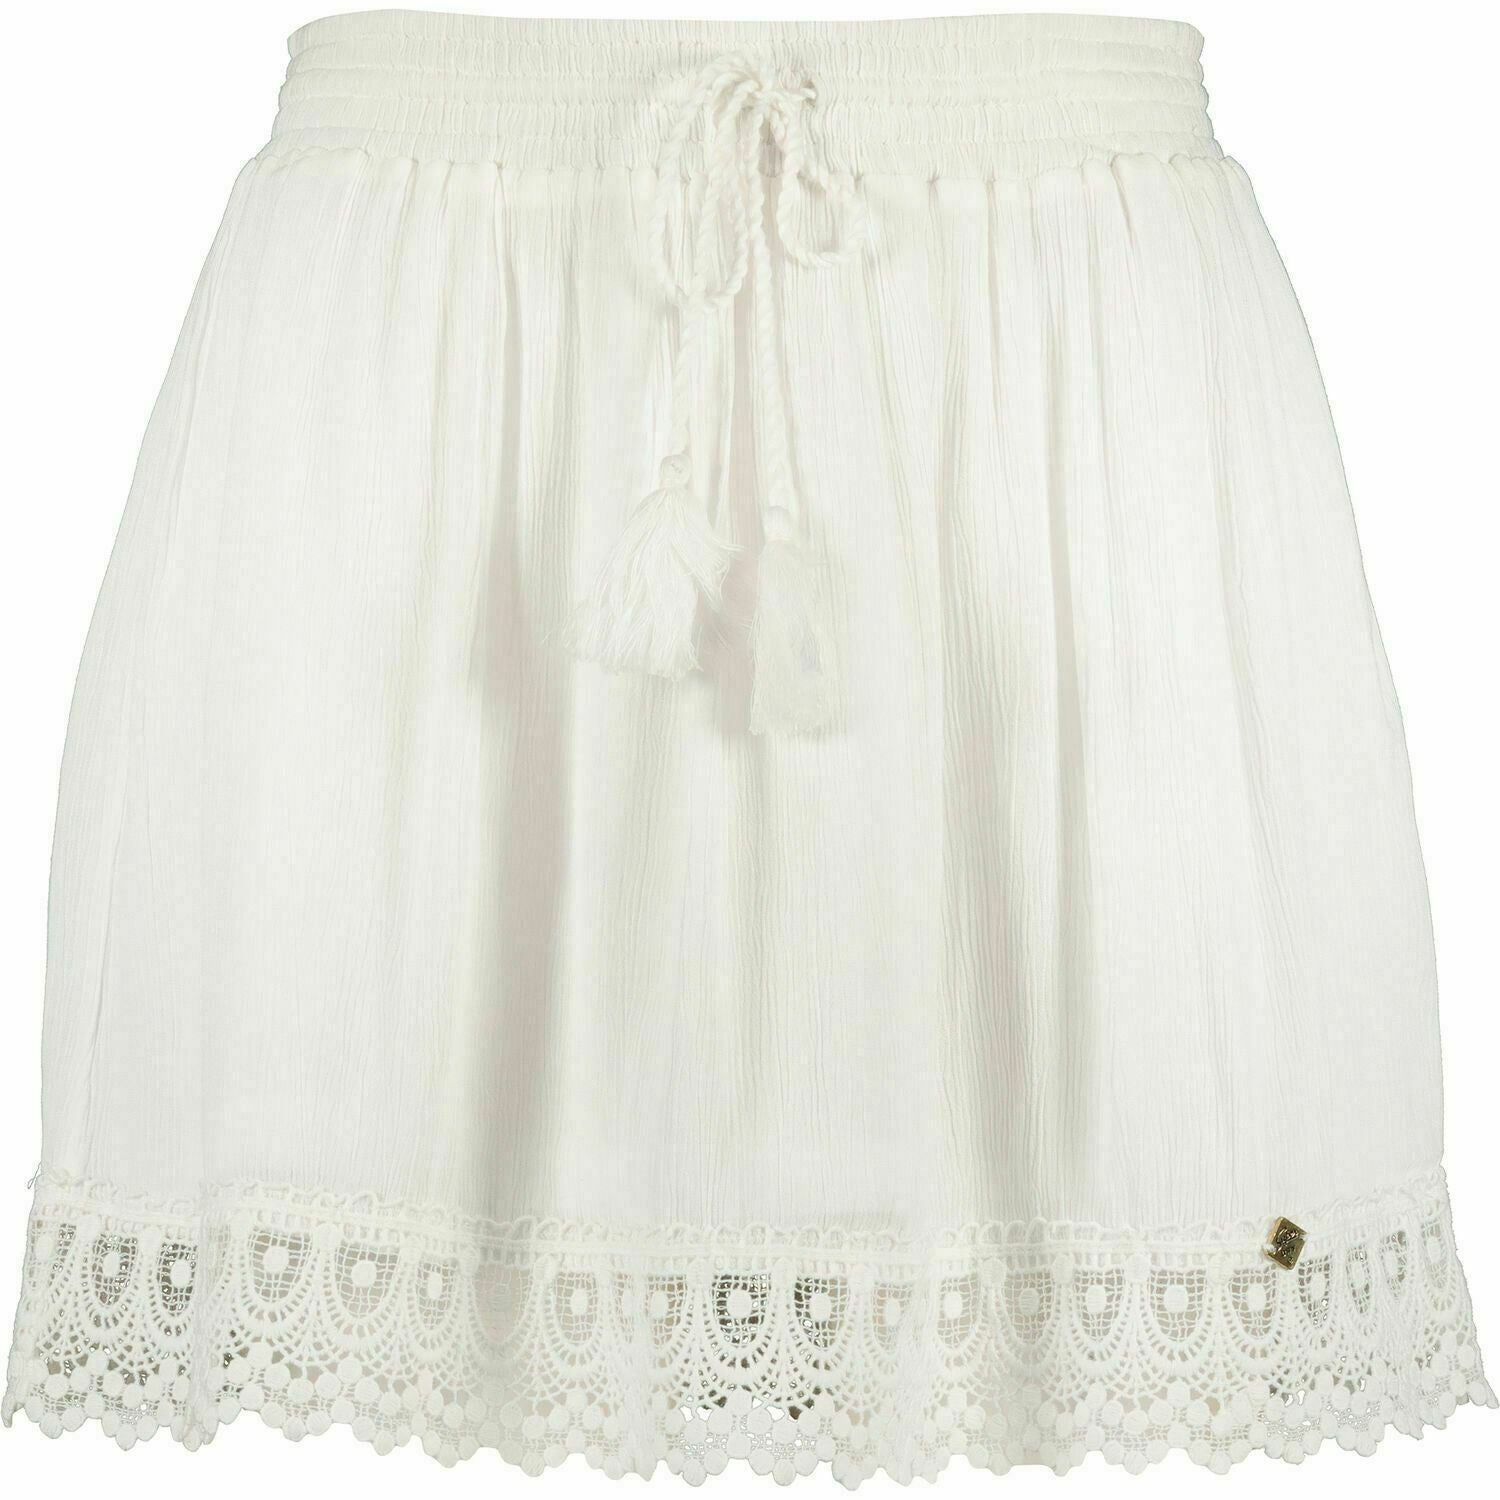 SUPERDRY Women's PRAIRIE White Crochet Hem Skirt, size XS / UK 8